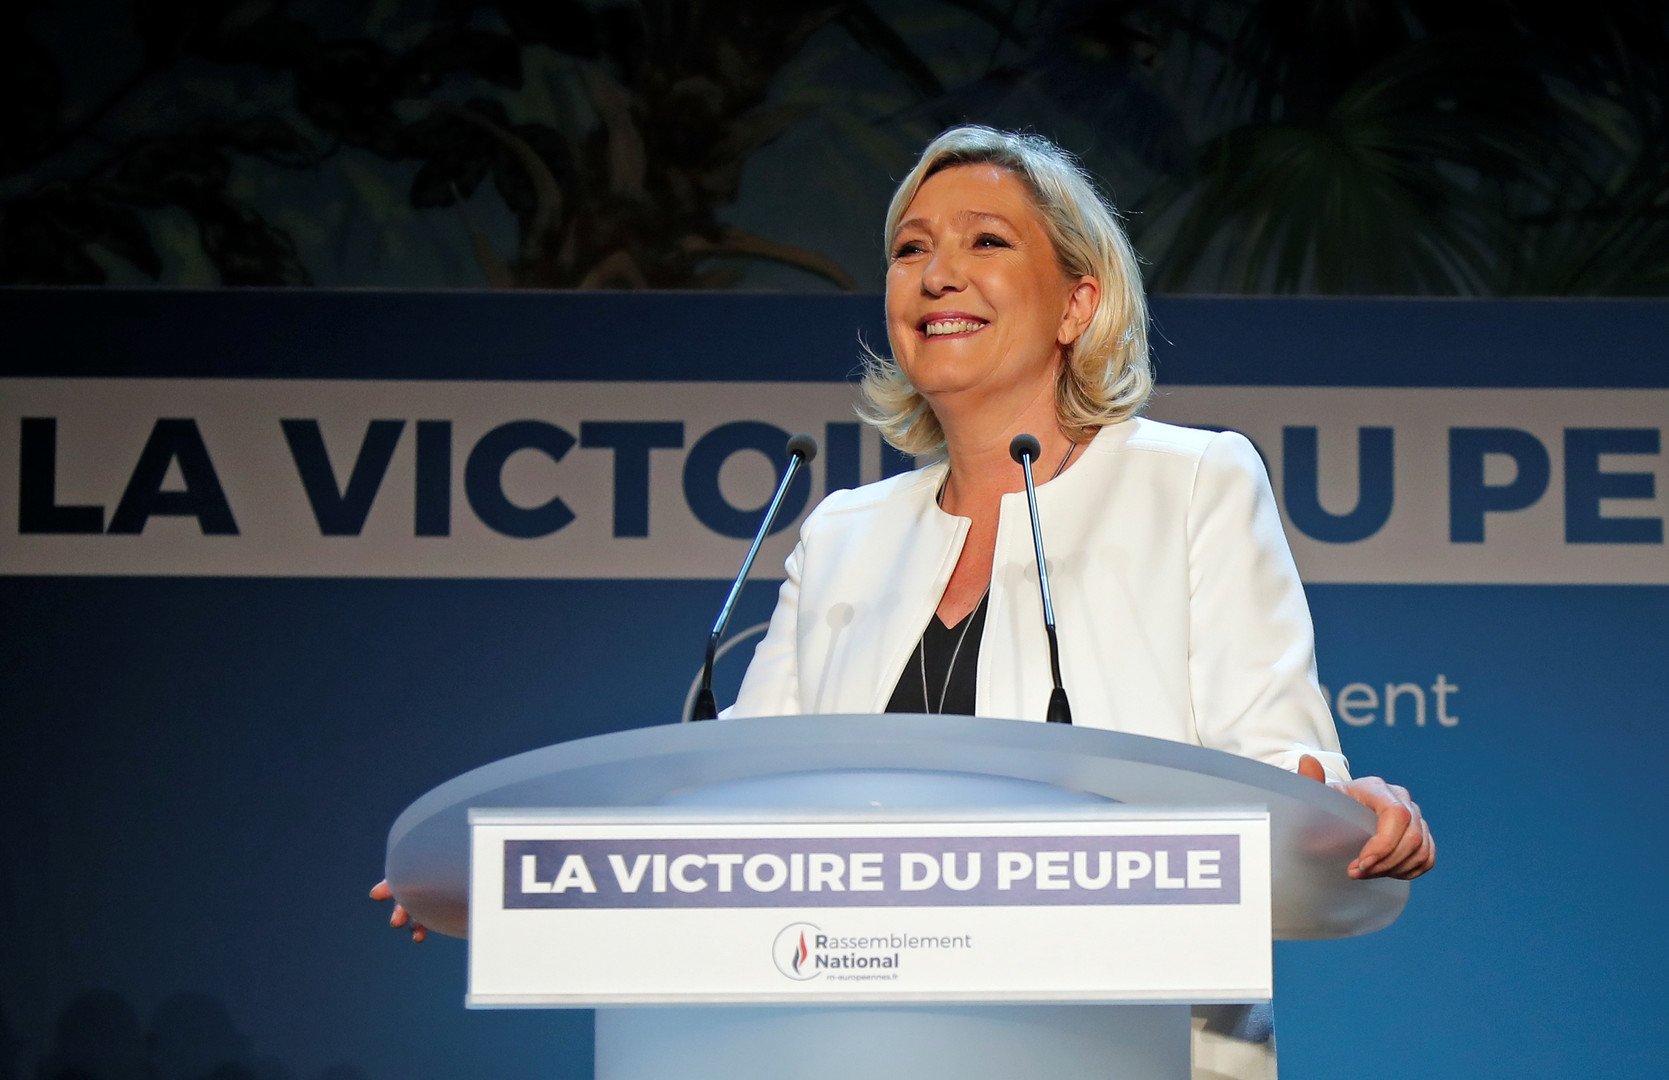 حزب لوبان يتقدم في انتخابات البرلمان الأوروبي بفرنسا